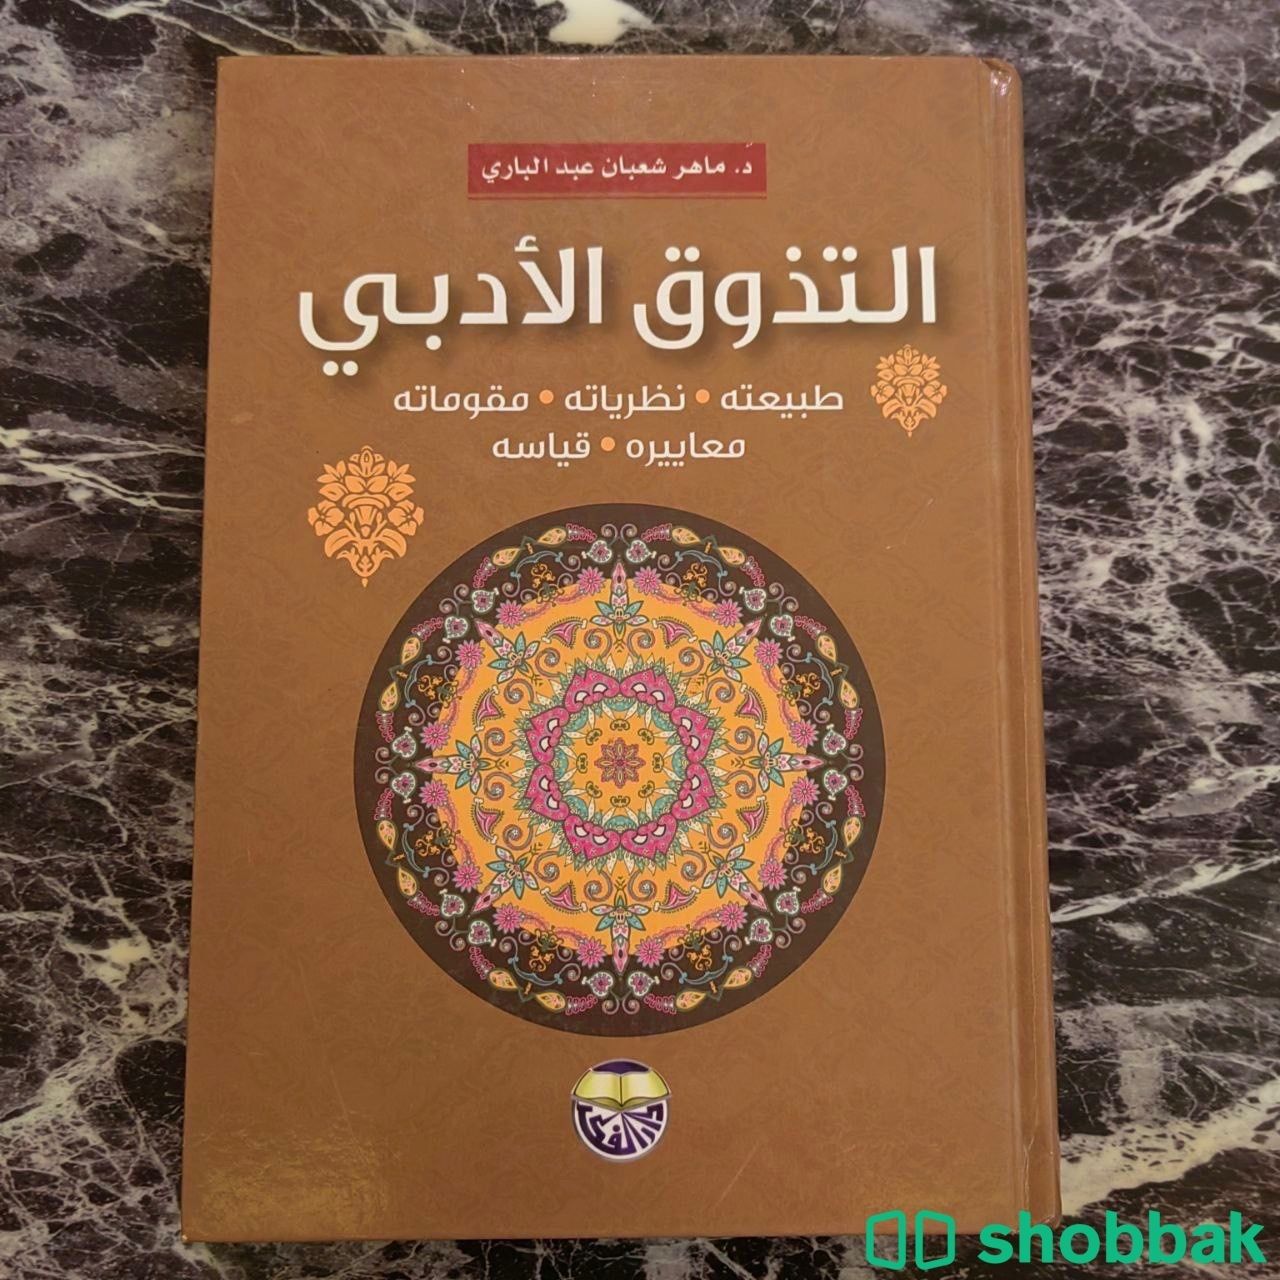 كتاب التذوق الأدبي د. ماهر شعبان عبد الباري بأقلّ الأسعار Shobbak Saudi Arabia